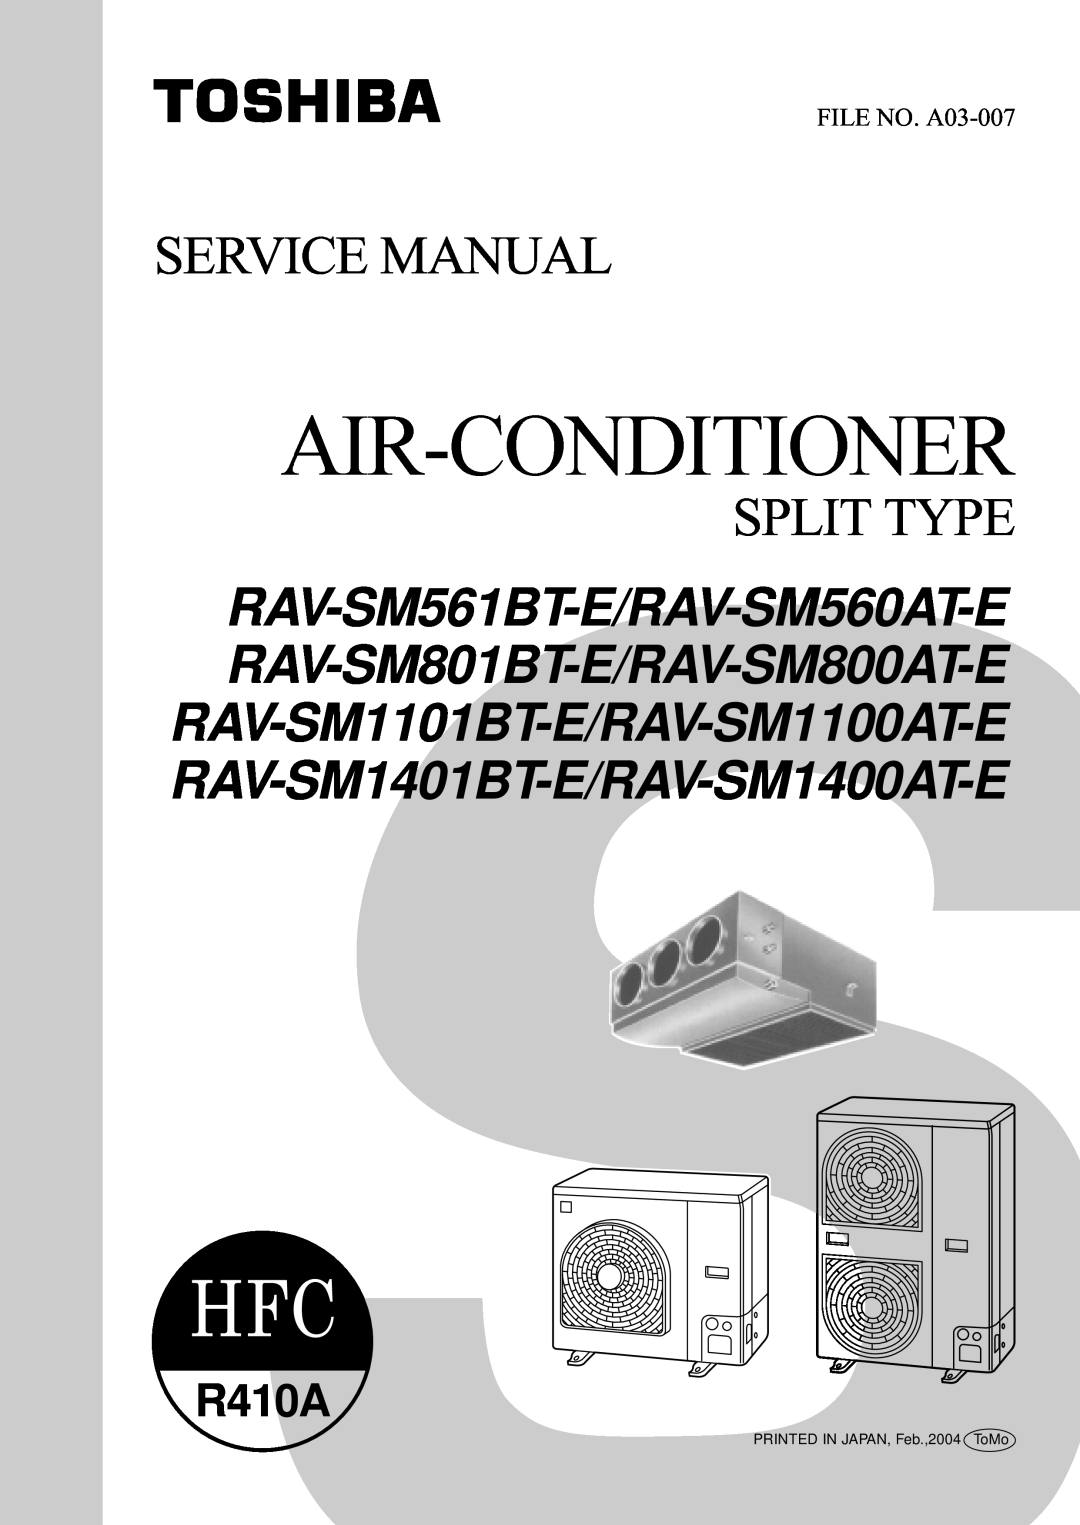 Toshiba RAV-SM1101BT-E, RAV-SM1400AT-E, RAV-SM1100AT-E service manual Service Manual Split Type, R410A, FILE NO. A03-007 